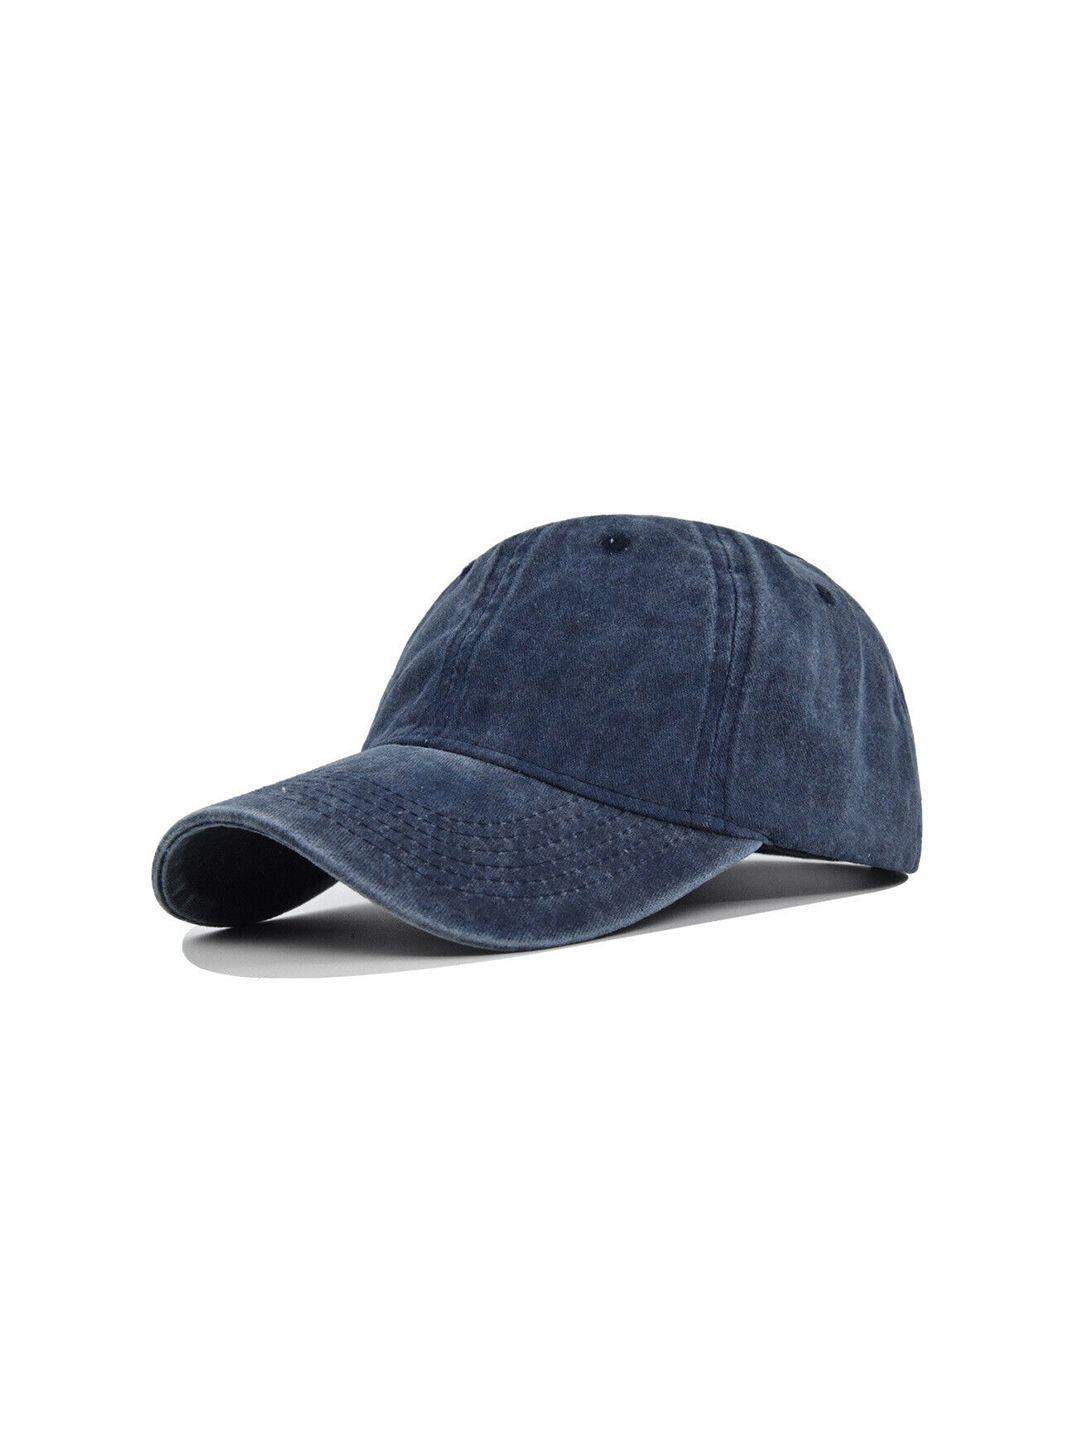 alexvyan-men-blue-baseball-cap